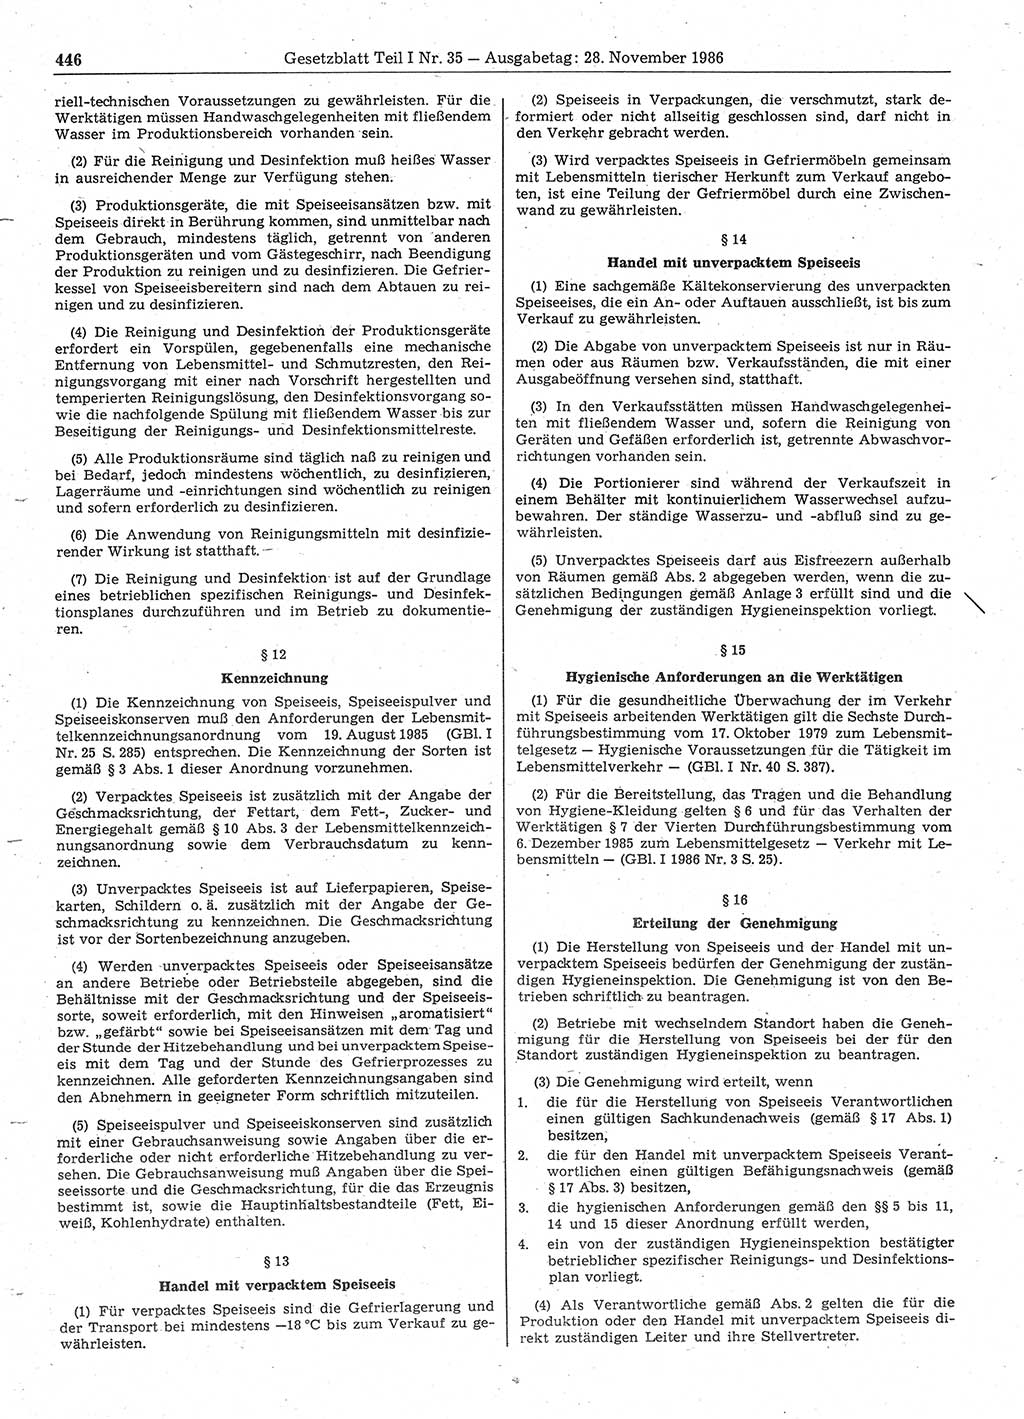 Gesetzblatt (GBl.) der Deutschen Demokratischen Republik (DDR) Teil Ⅰ 1986, Seite 446 (GBl. DDR Ⅰ 1986, S. 446)